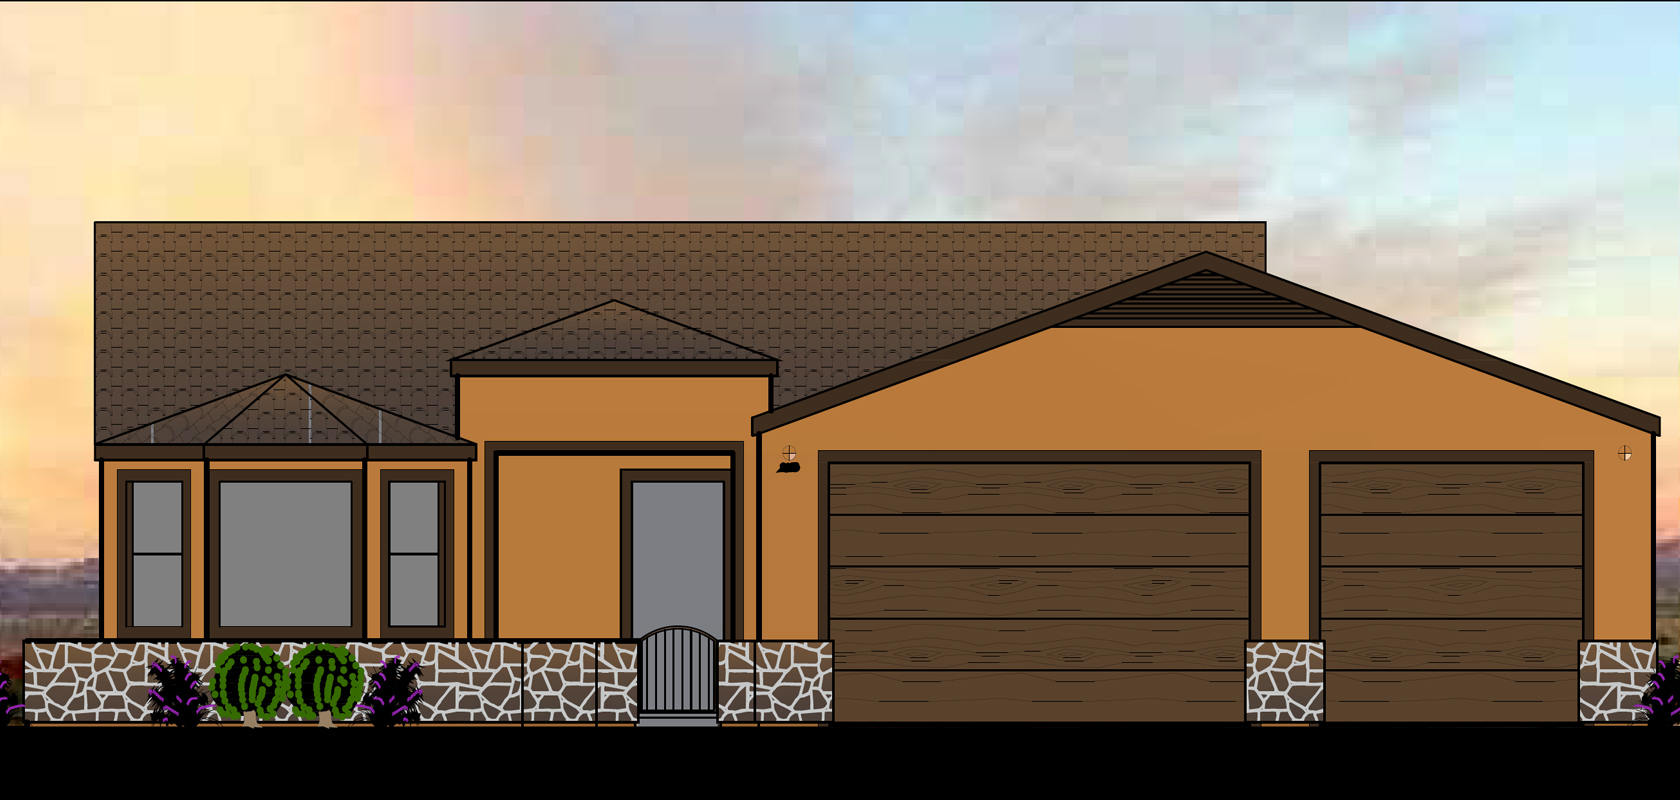 desert designed homes - saddleback